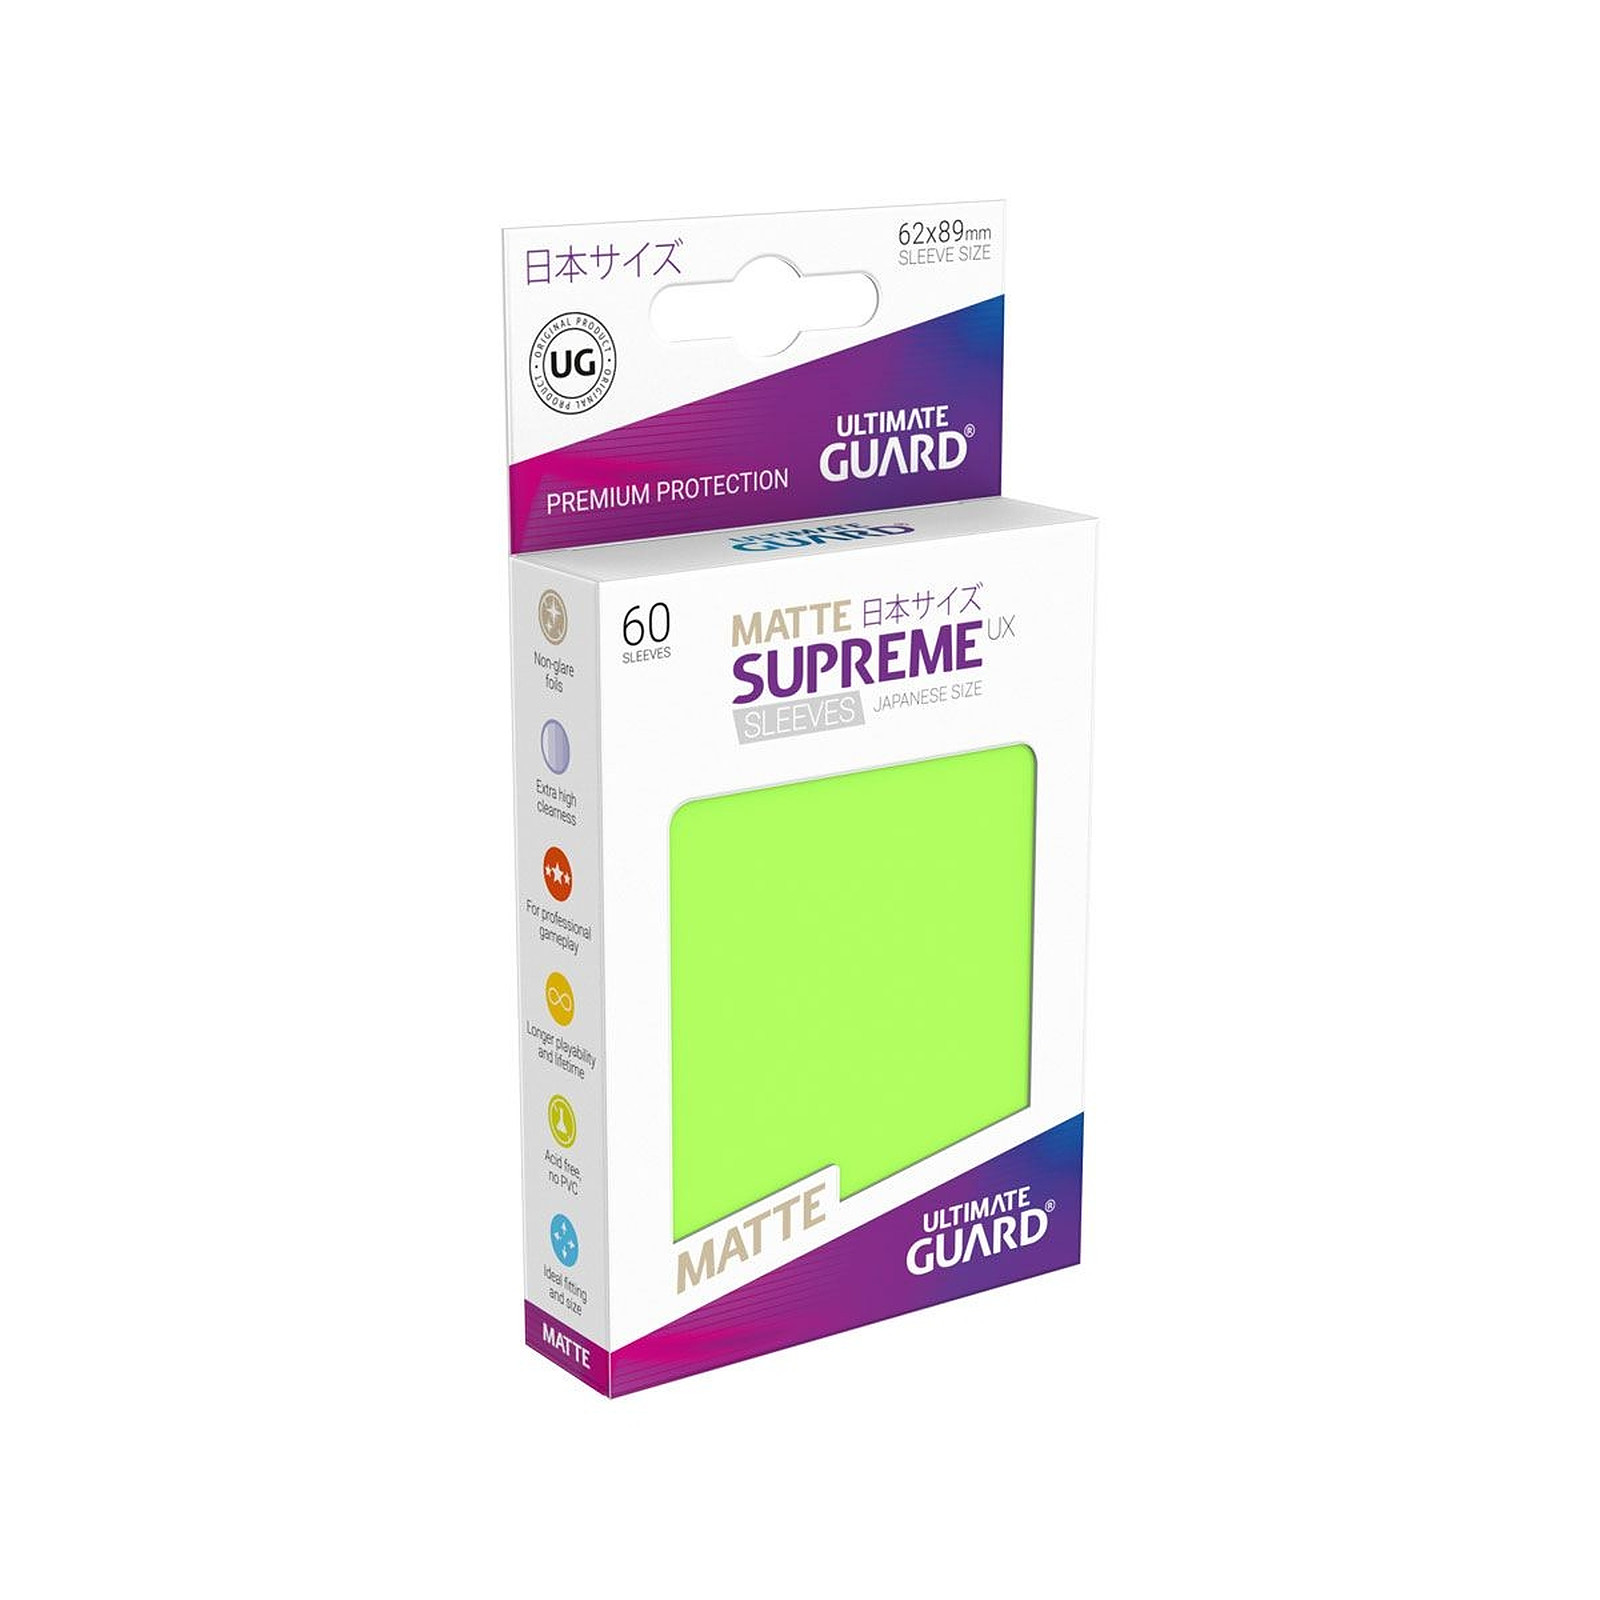 Ultimate Guard - 60 pochettes Supreme UX Sleeves format japonais Vert Clair Mat - Accessoire jeux Ultimate Guard